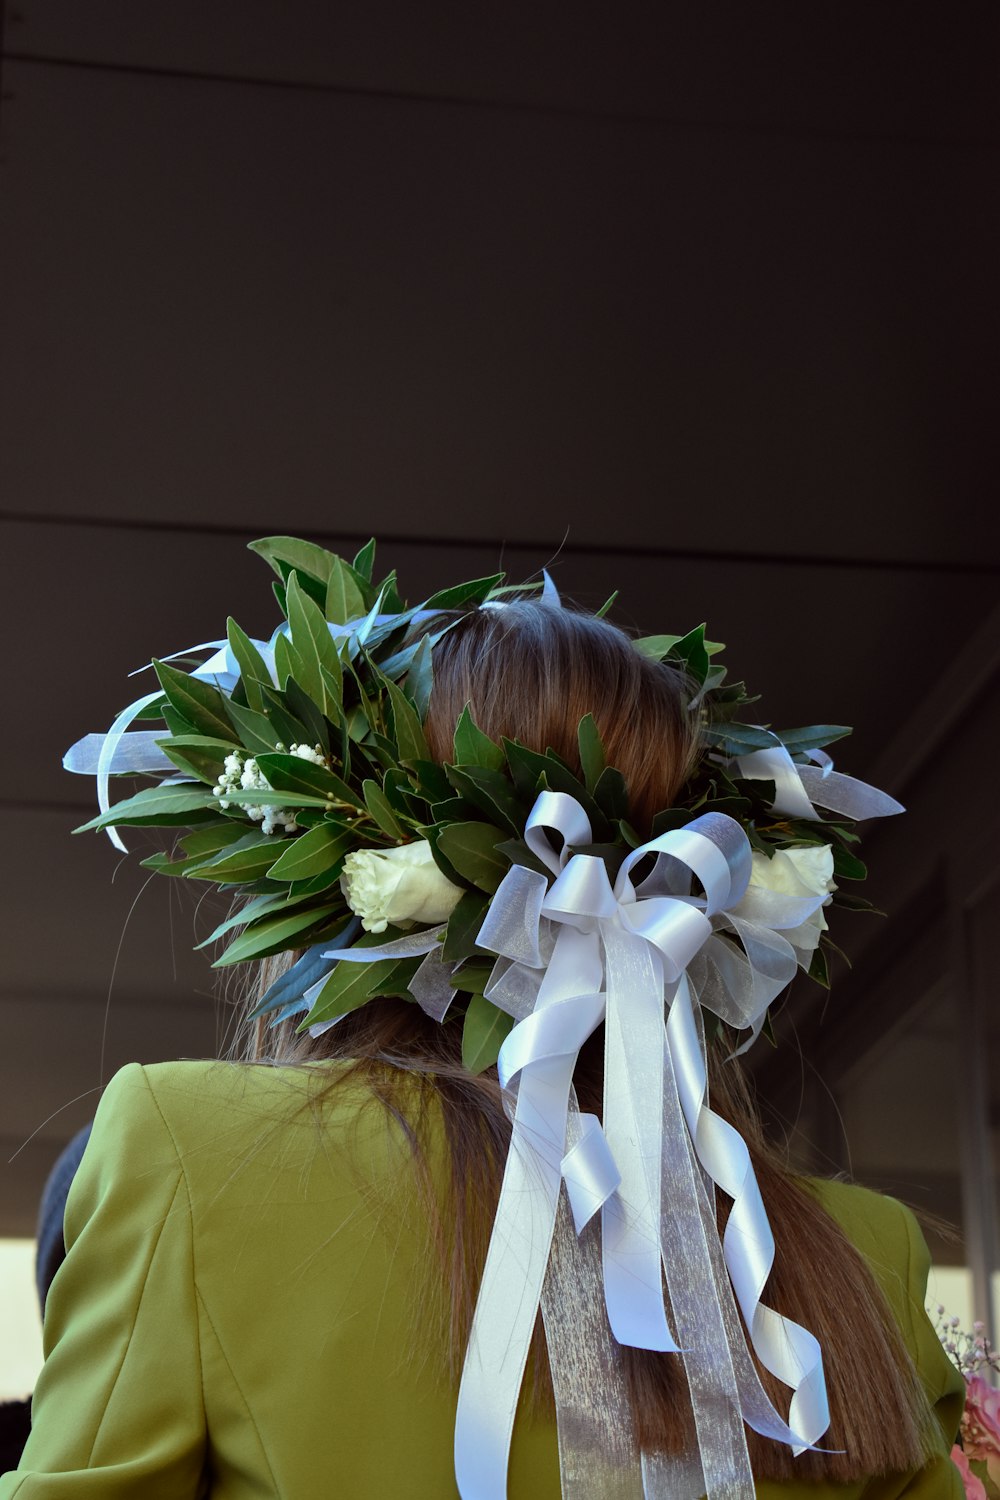 Una donna con una corona di fiori sulla sua testa